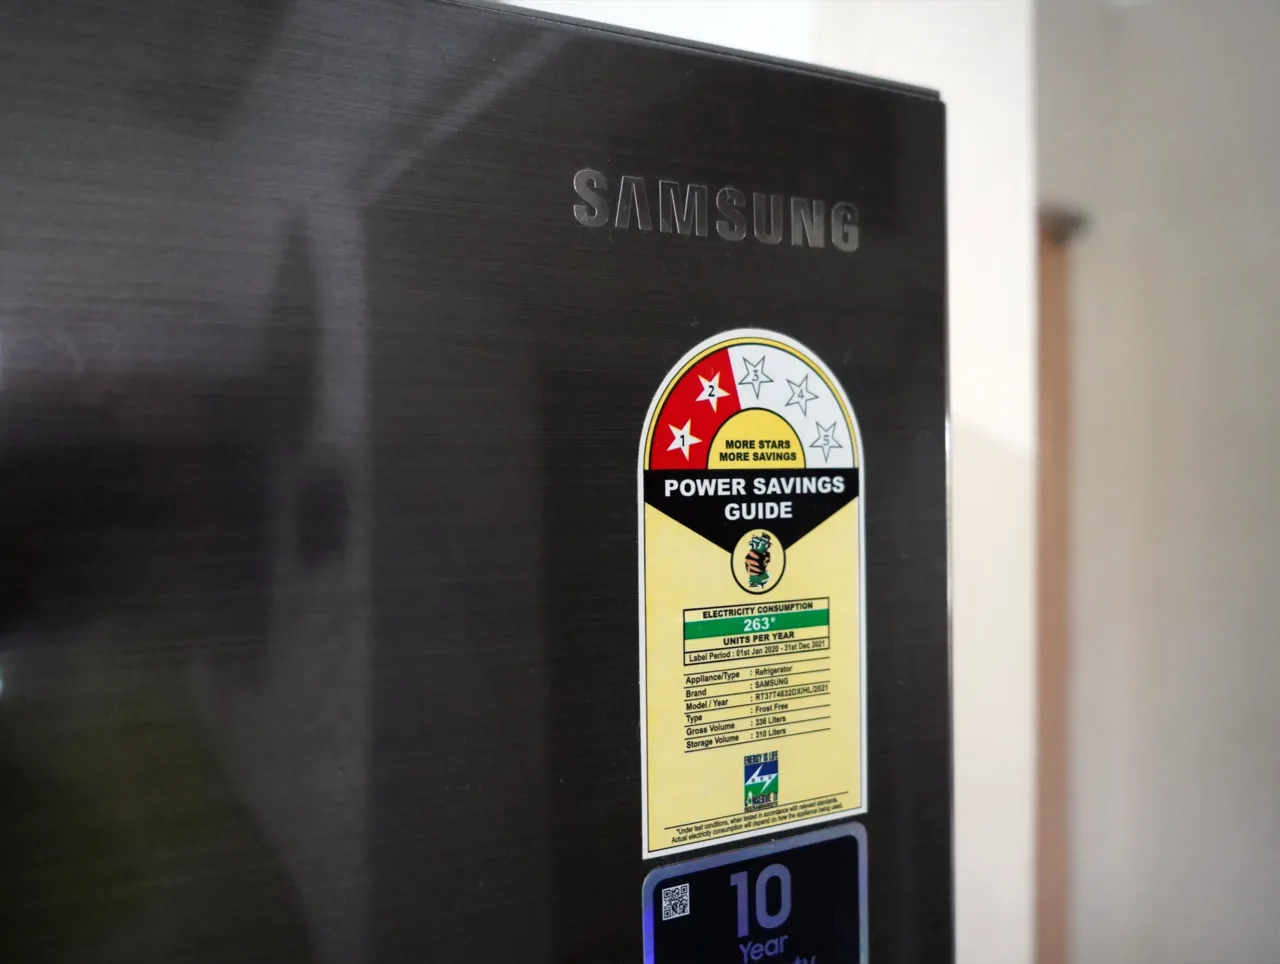 Samsung double door fridge power savings